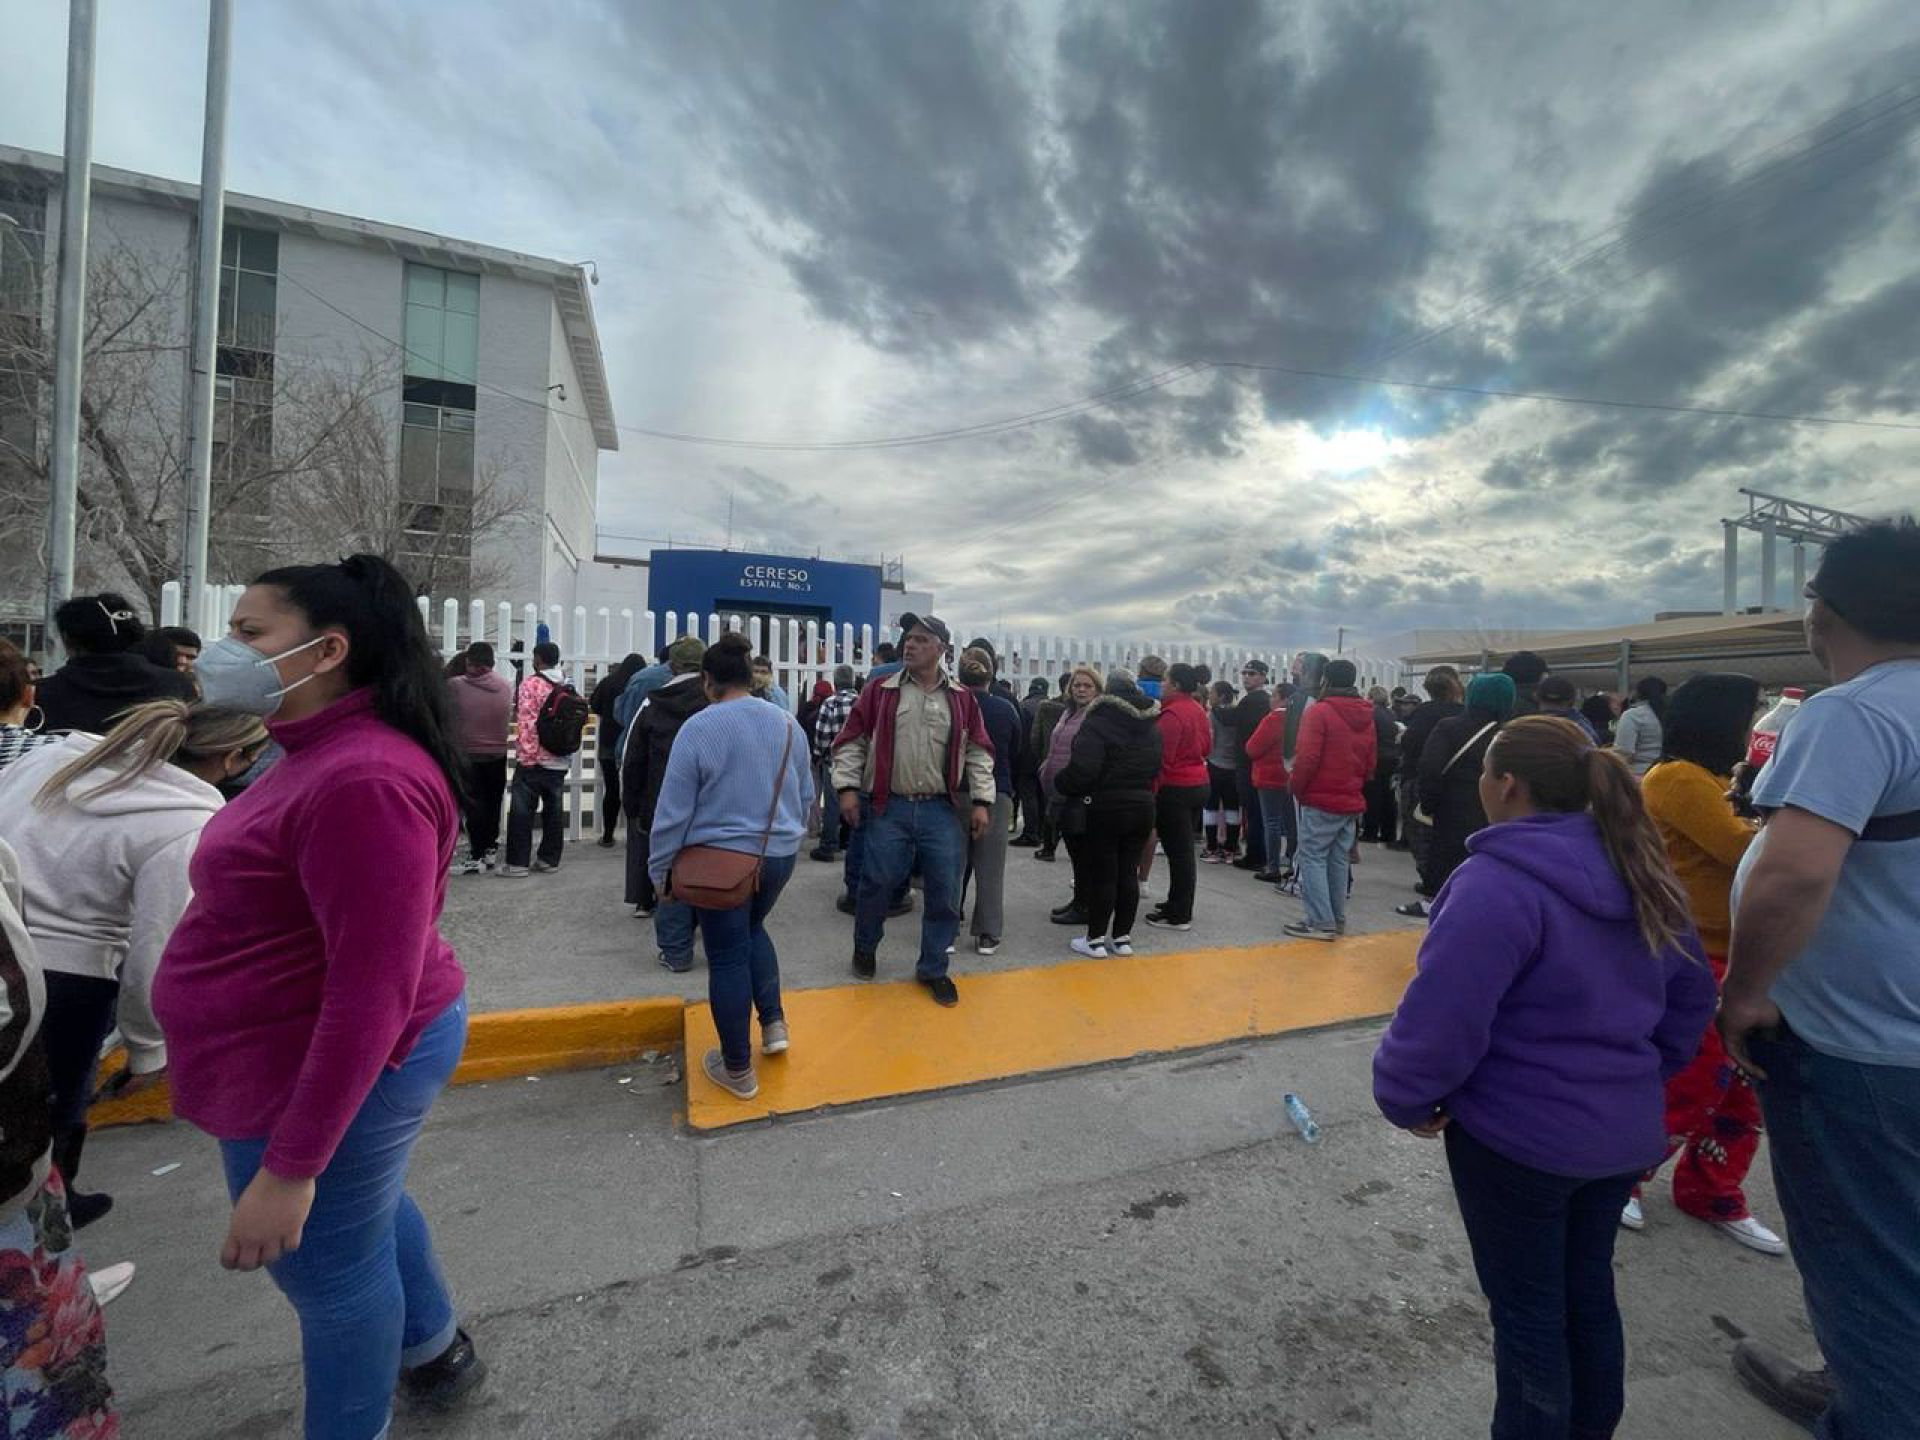 La mañana del 1 de enero, un comando armado atacó el Penal de Ciudad Juárez y sembró el terror entre las familias durante la hora de visita. (CUARTOSCURO)